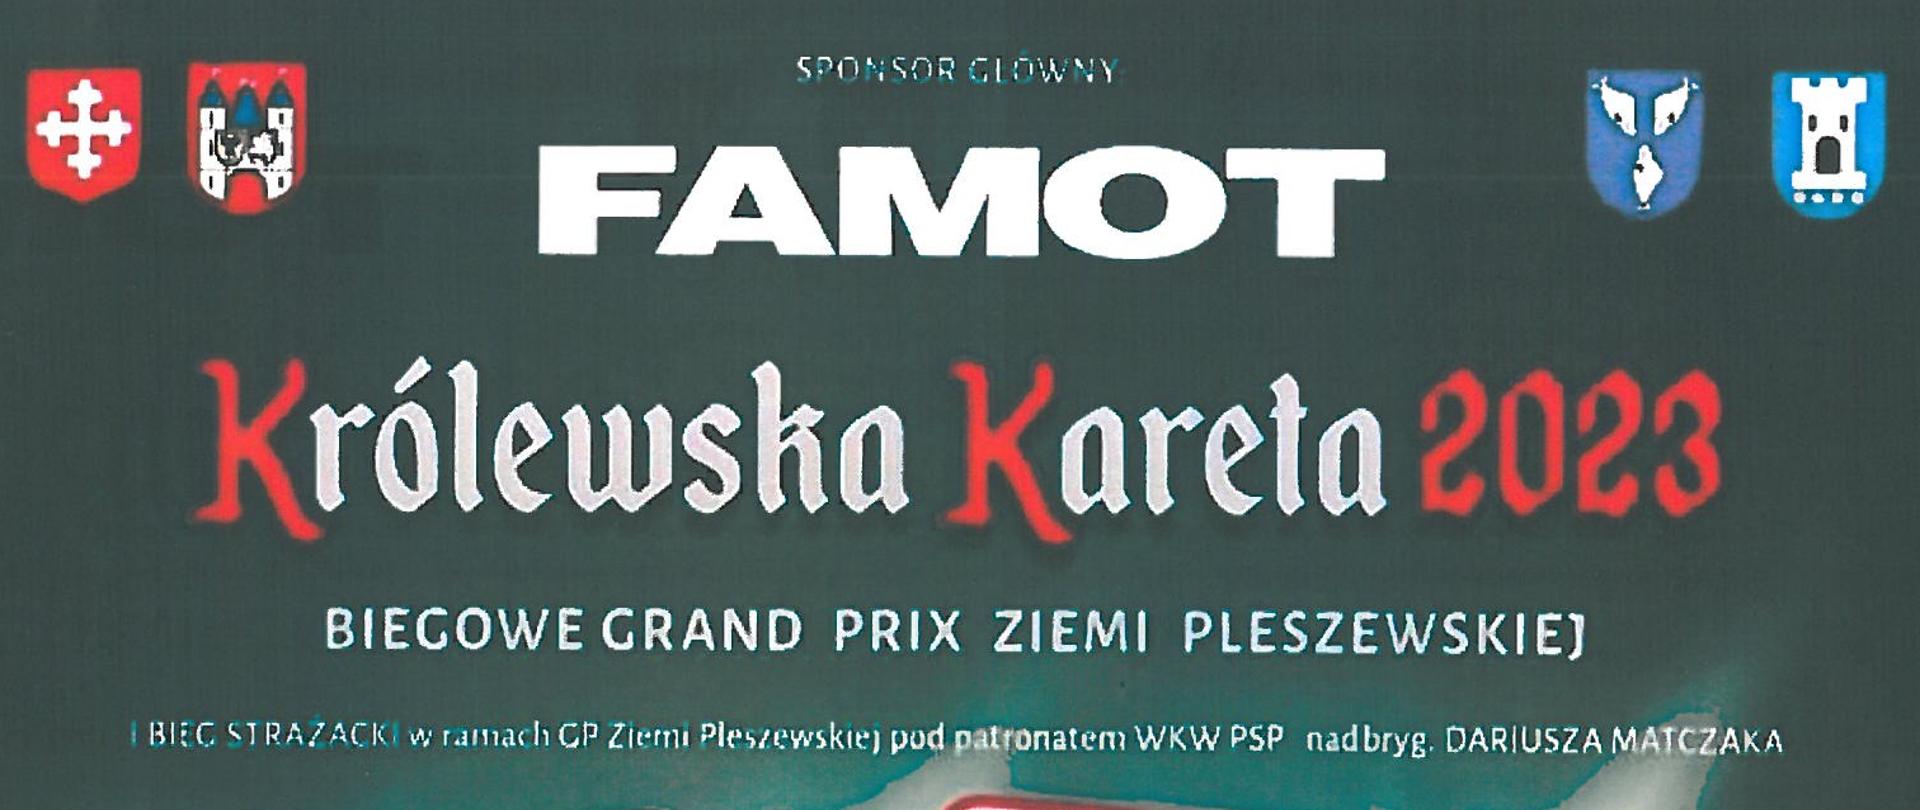 Plakat promujący Biegowe Grand Prix Ziemi Pleszewskiej